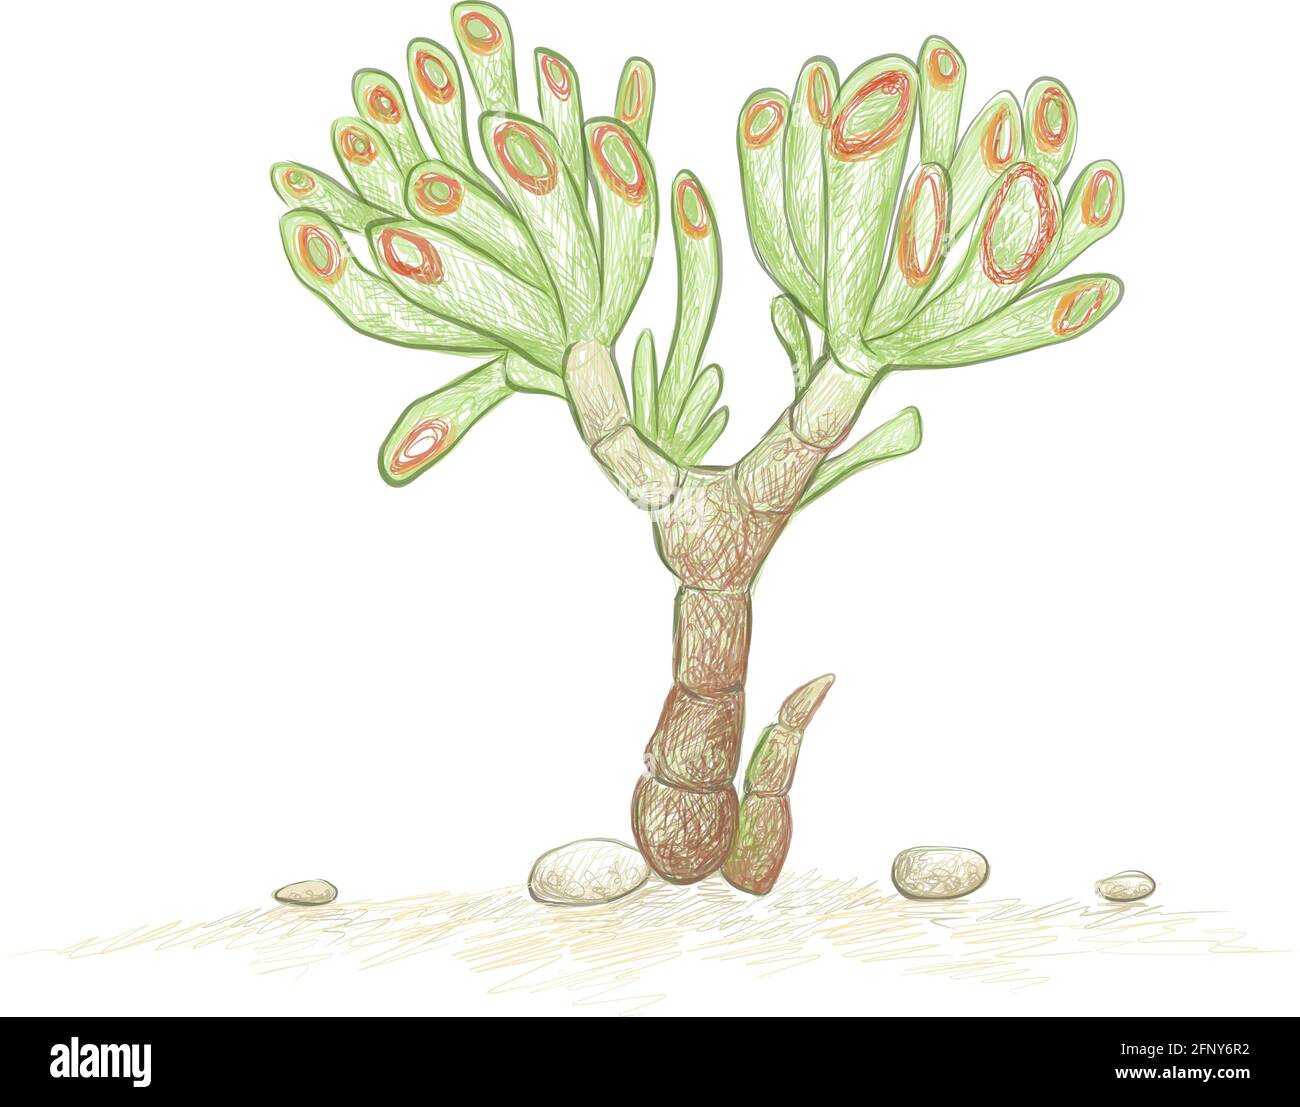 Illustration Handgezeichnete Skizze von Crassula Ovata, Gollum Jade oder Geldanlage. Eine Sukkulenten Pflanzen für die Gartendekoration. Stock Vektor